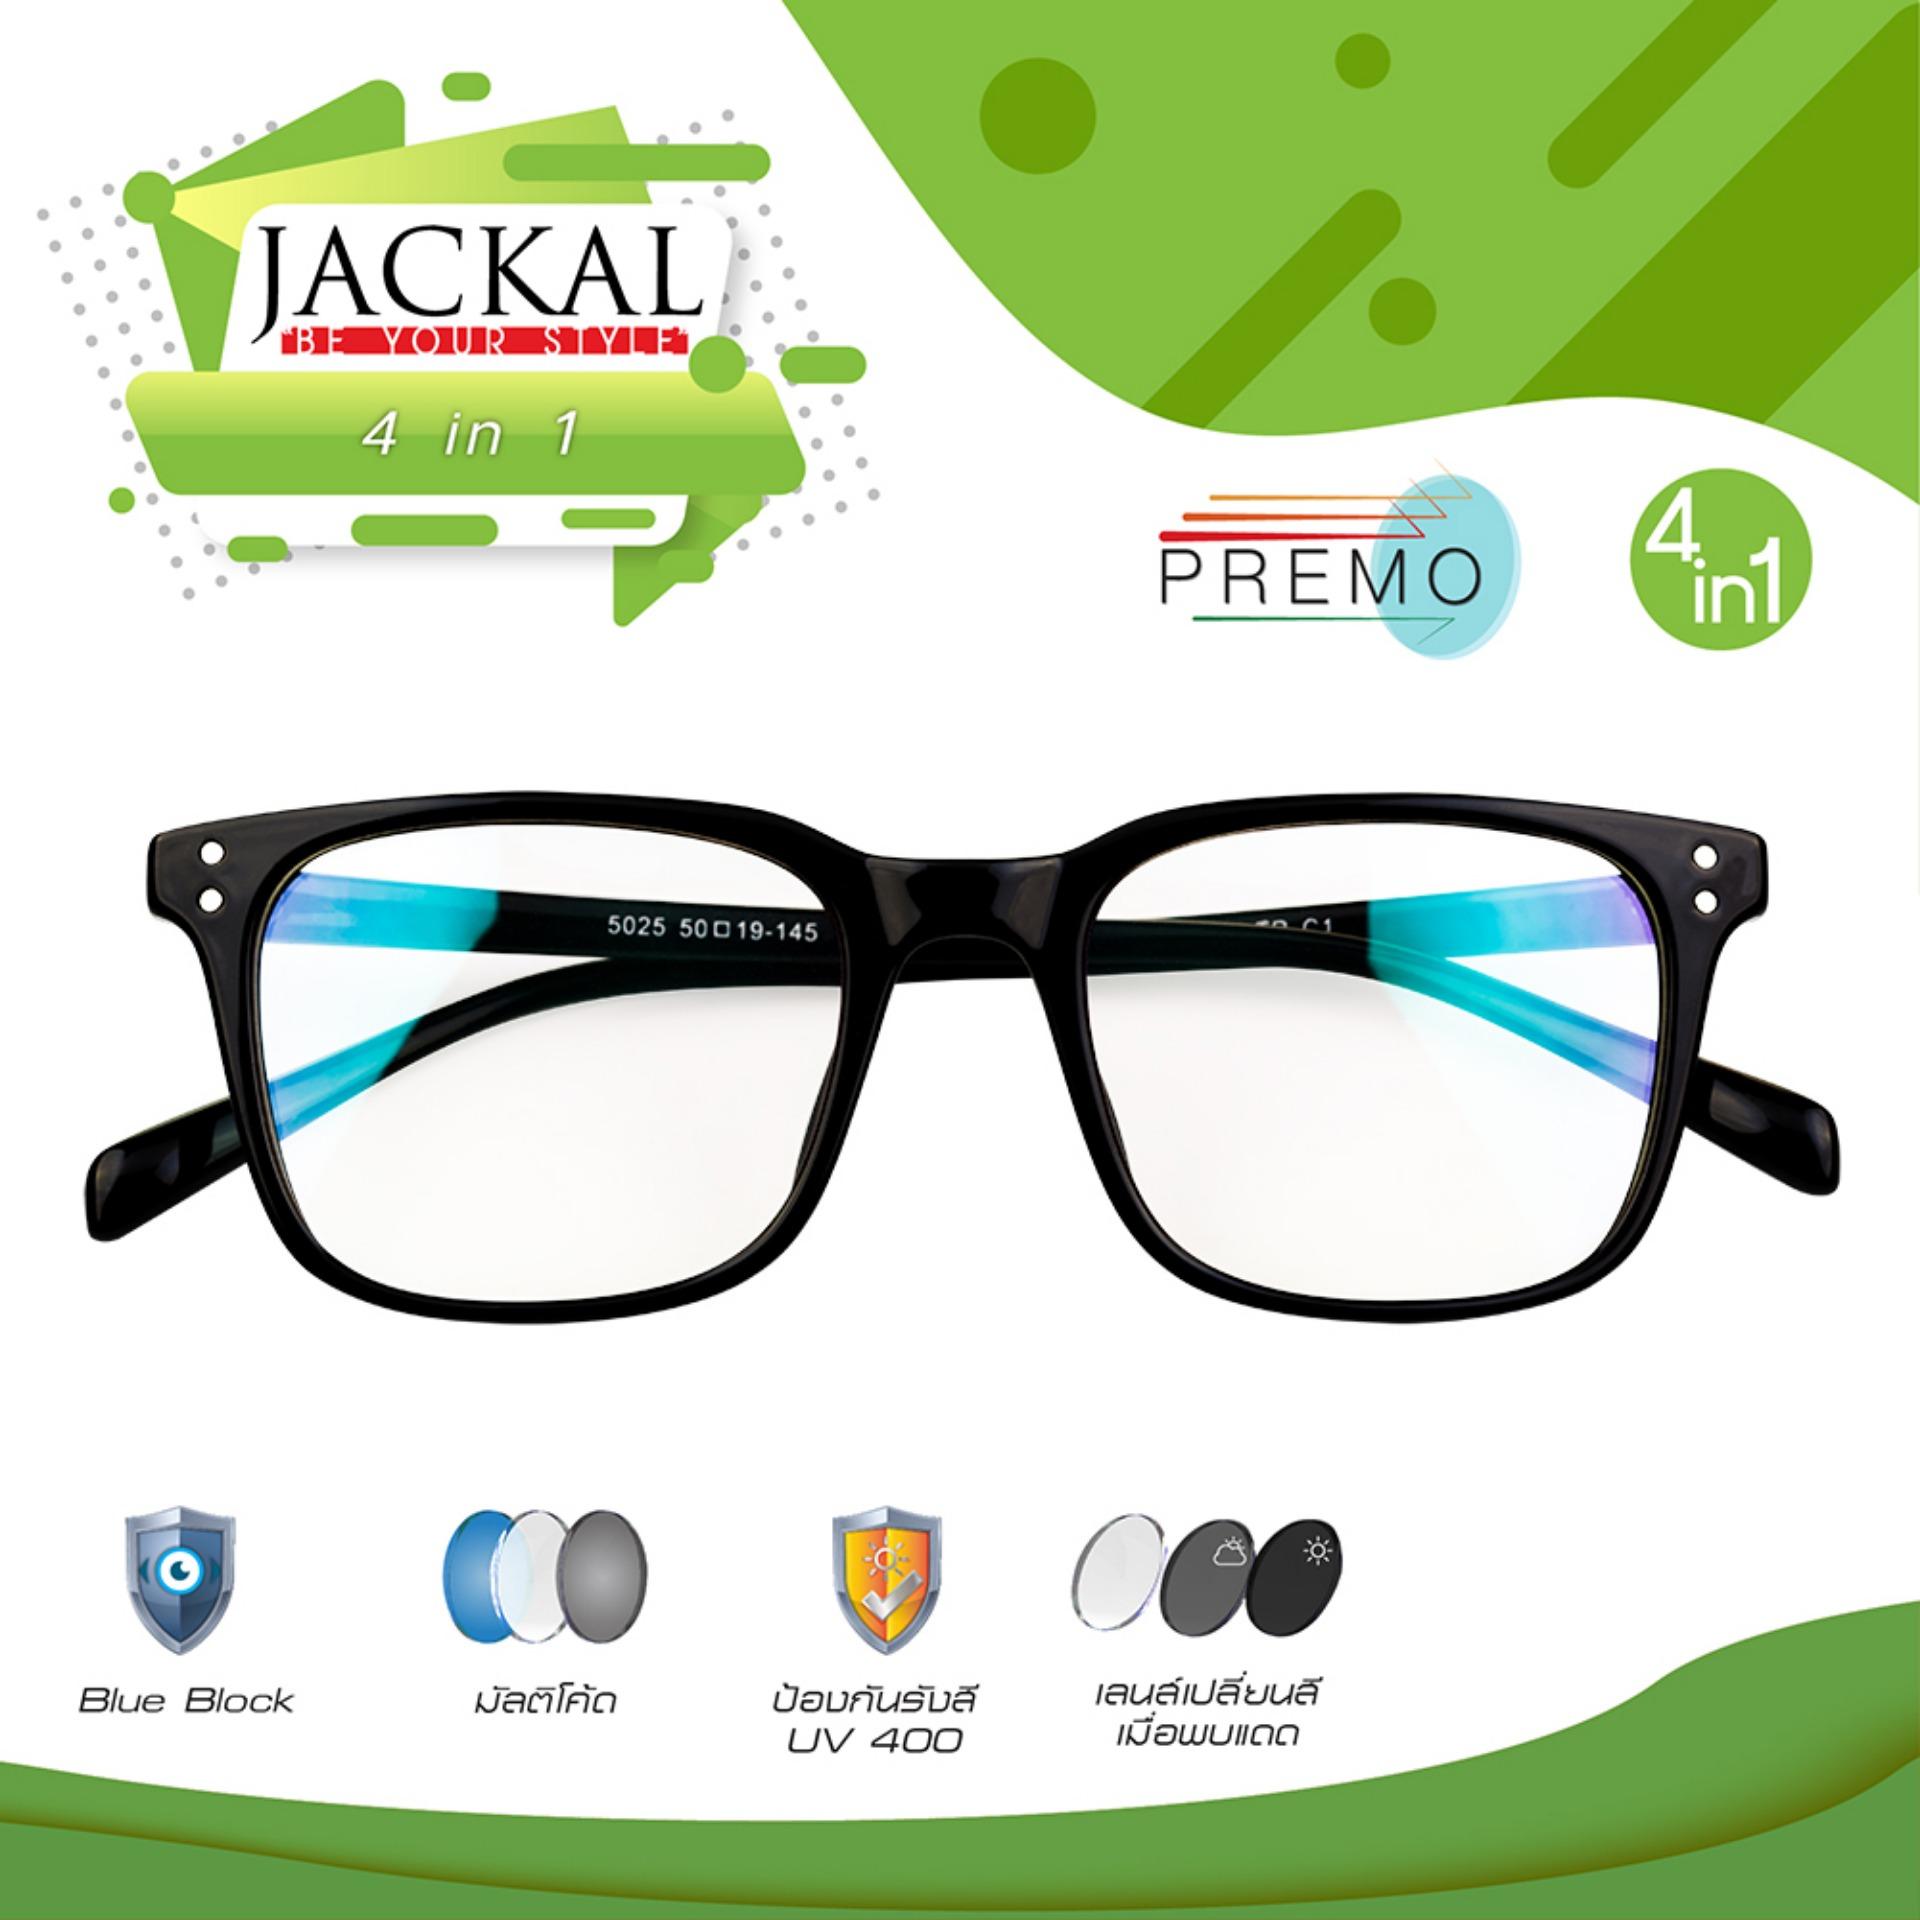 JACKAL OP011(4in1) แว่นกรองแสงสีฟ้า เลนส์ออโต้ มัลติโค้ด สุดยอดเทคโนโลยีใหม่ PREMO Lens จากญี่ปุ่น วัสดุกรอบTR90ไม่หัก-สีดำ